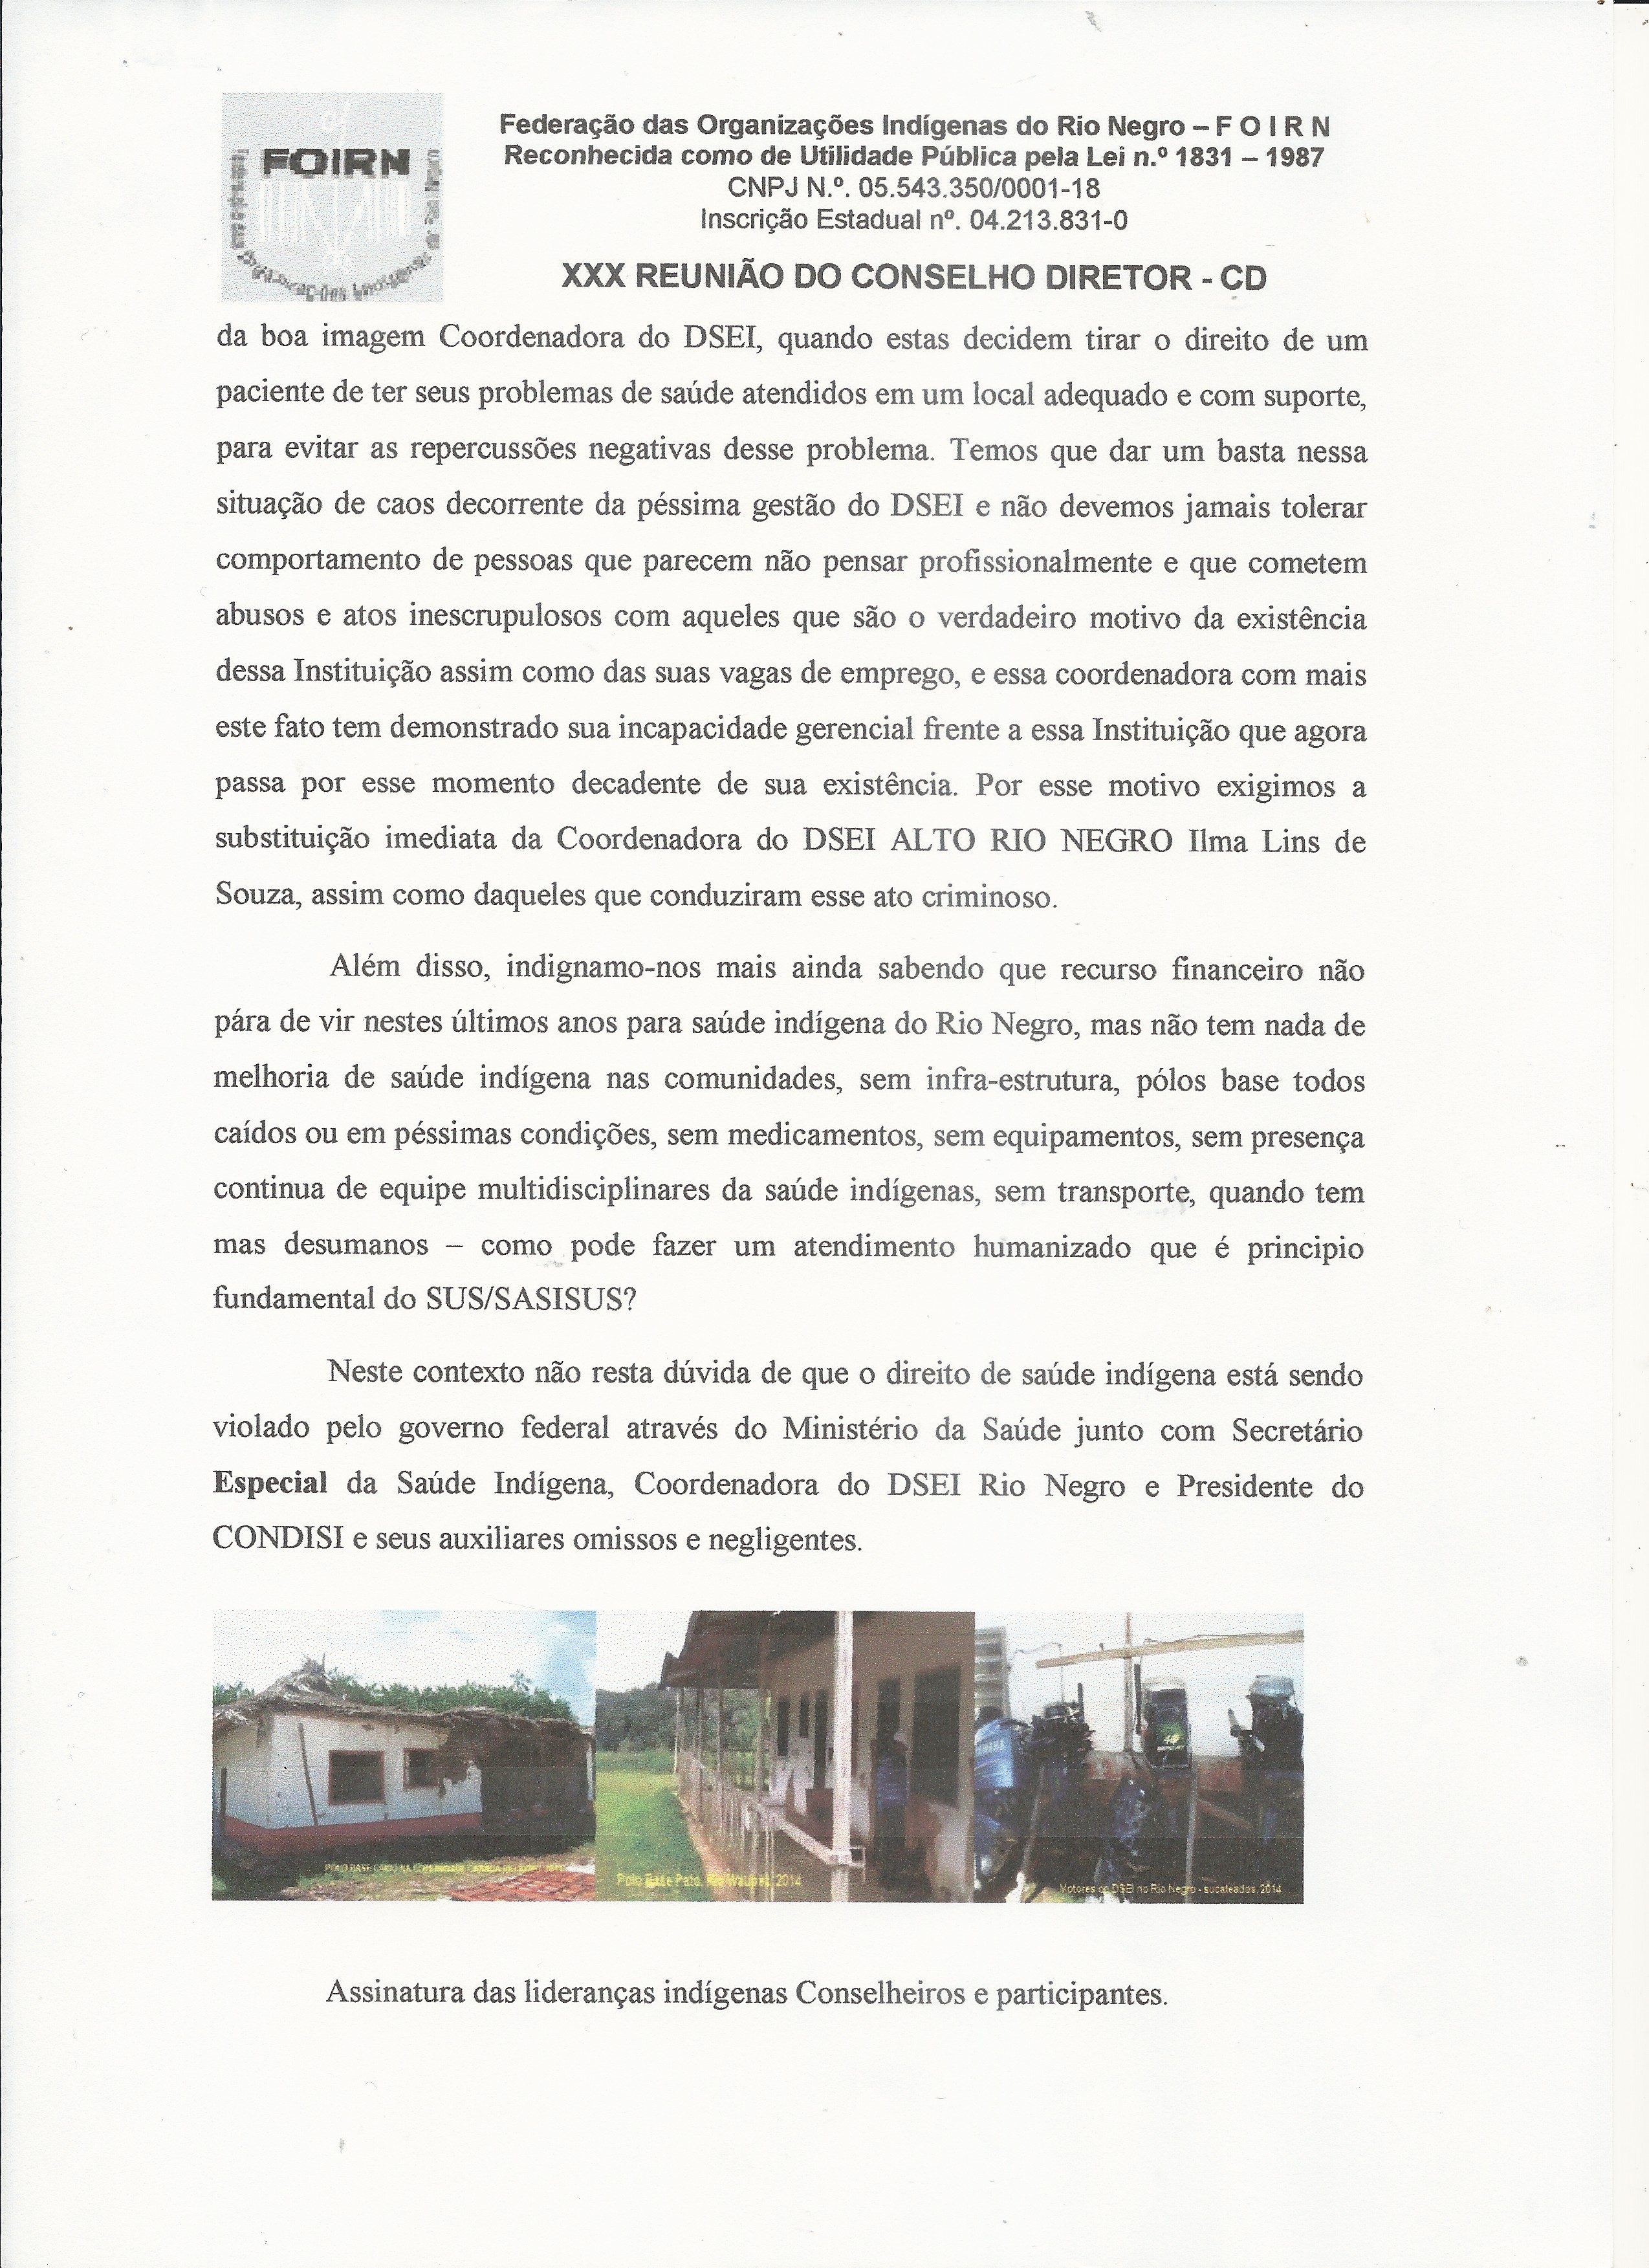 Carta Denúncia XXX CD FOIRN_Saúde Indígena -4